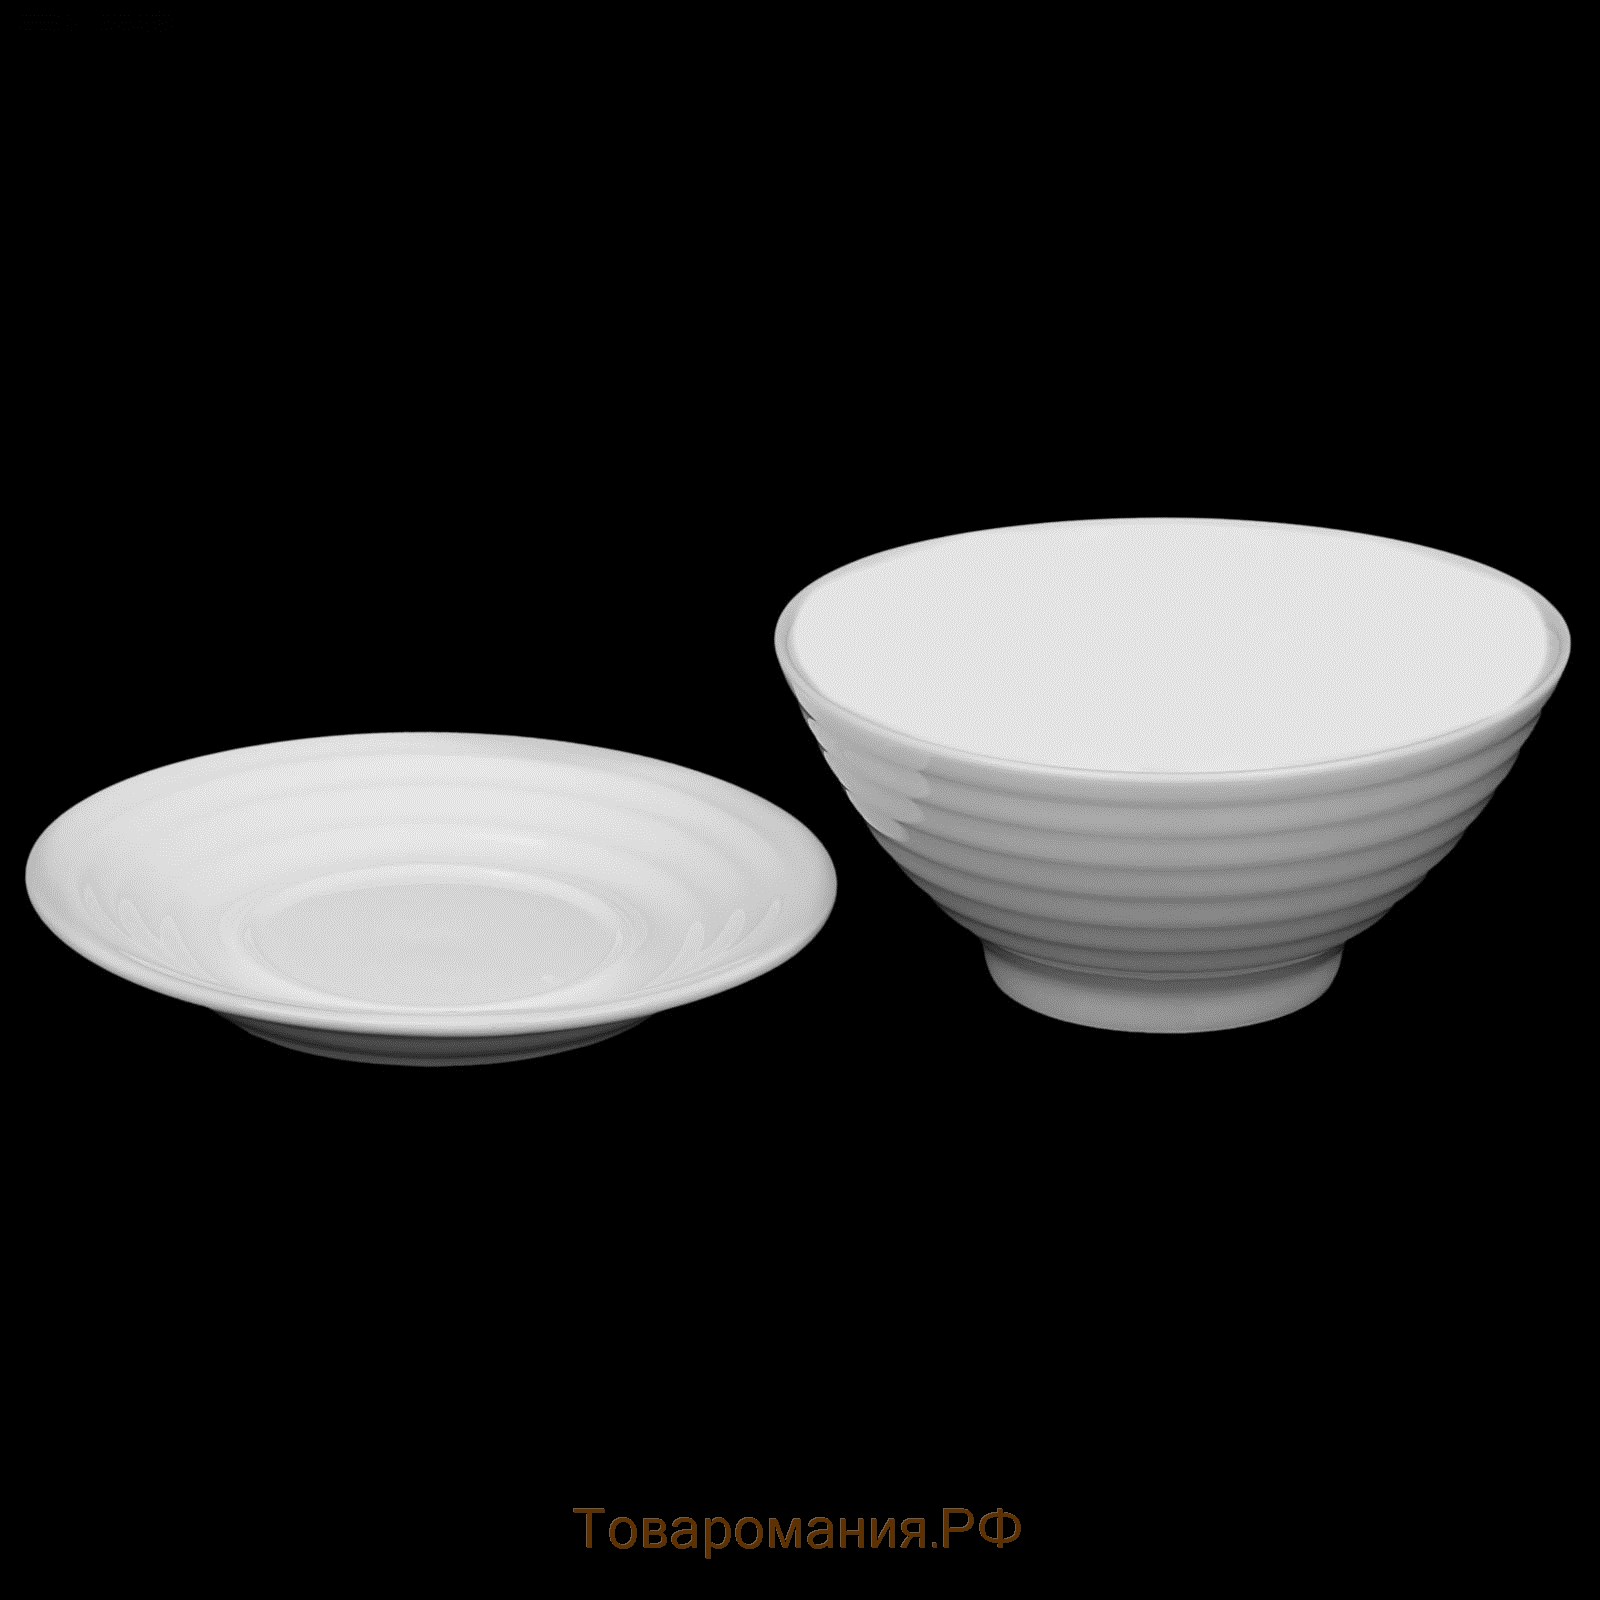 Миска фарфоровая с блюдцем, 2 предмета: миска 500 мл, блюдце d=15 см, цвет белый